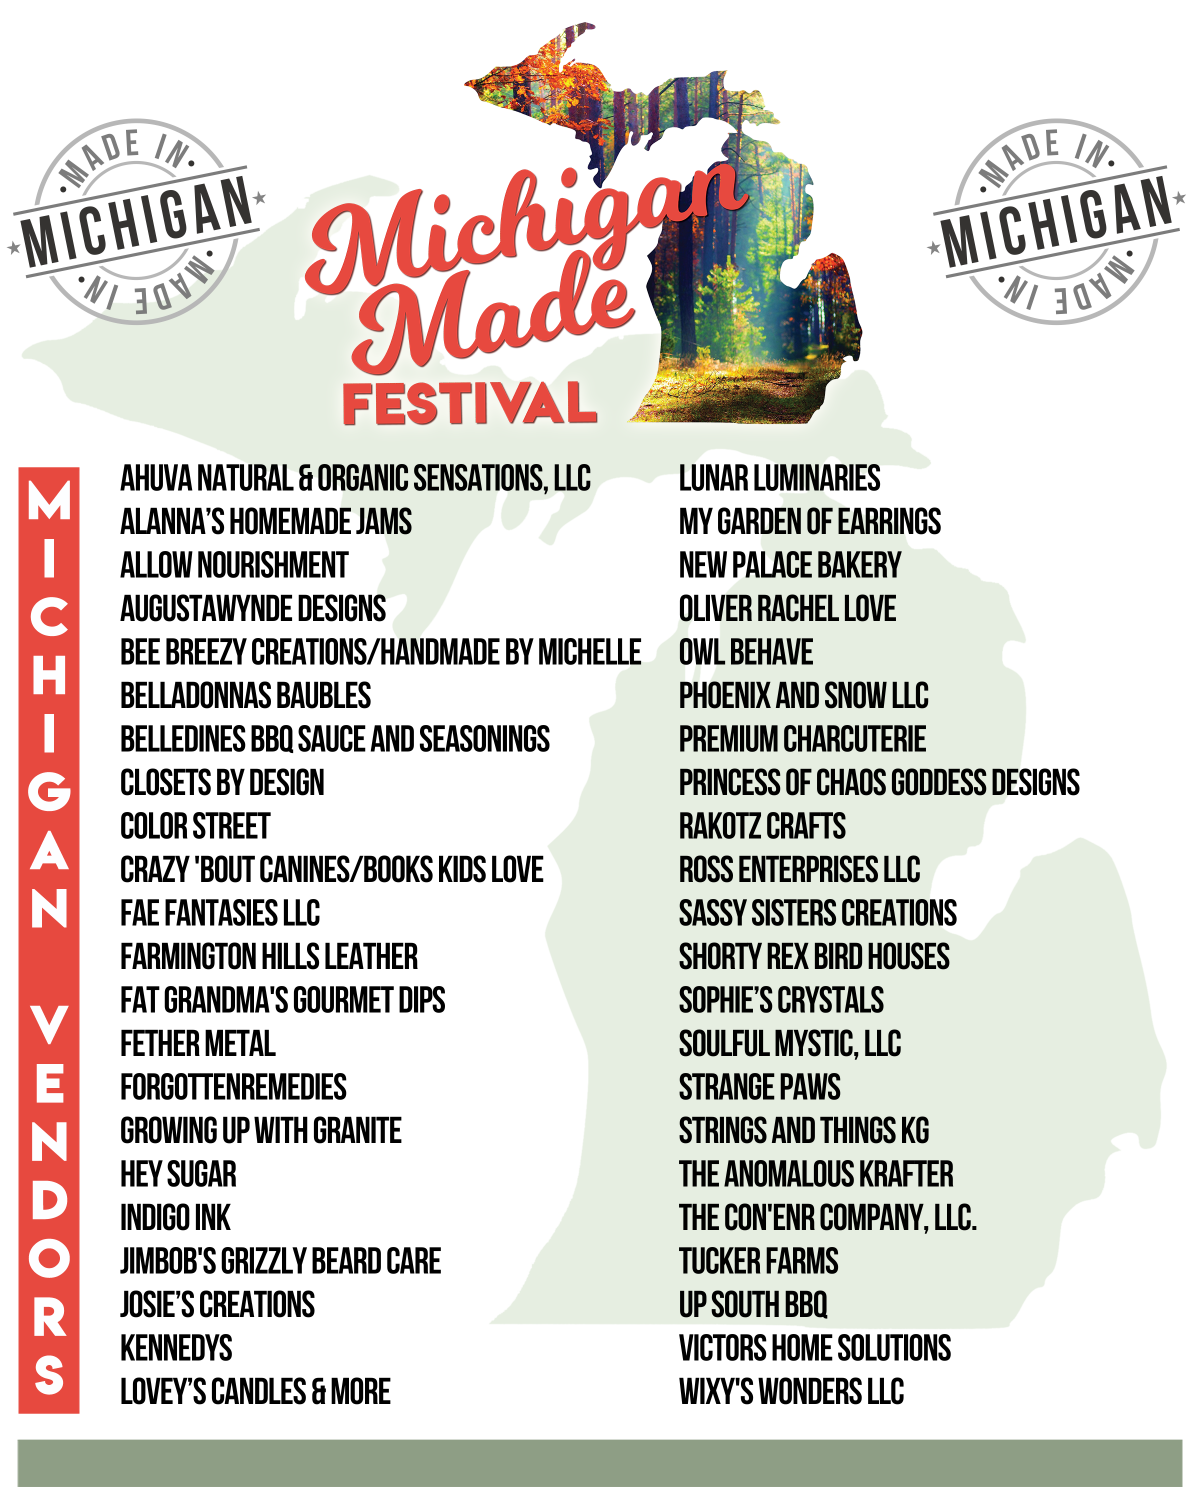 Michigan Made Festival Vendors